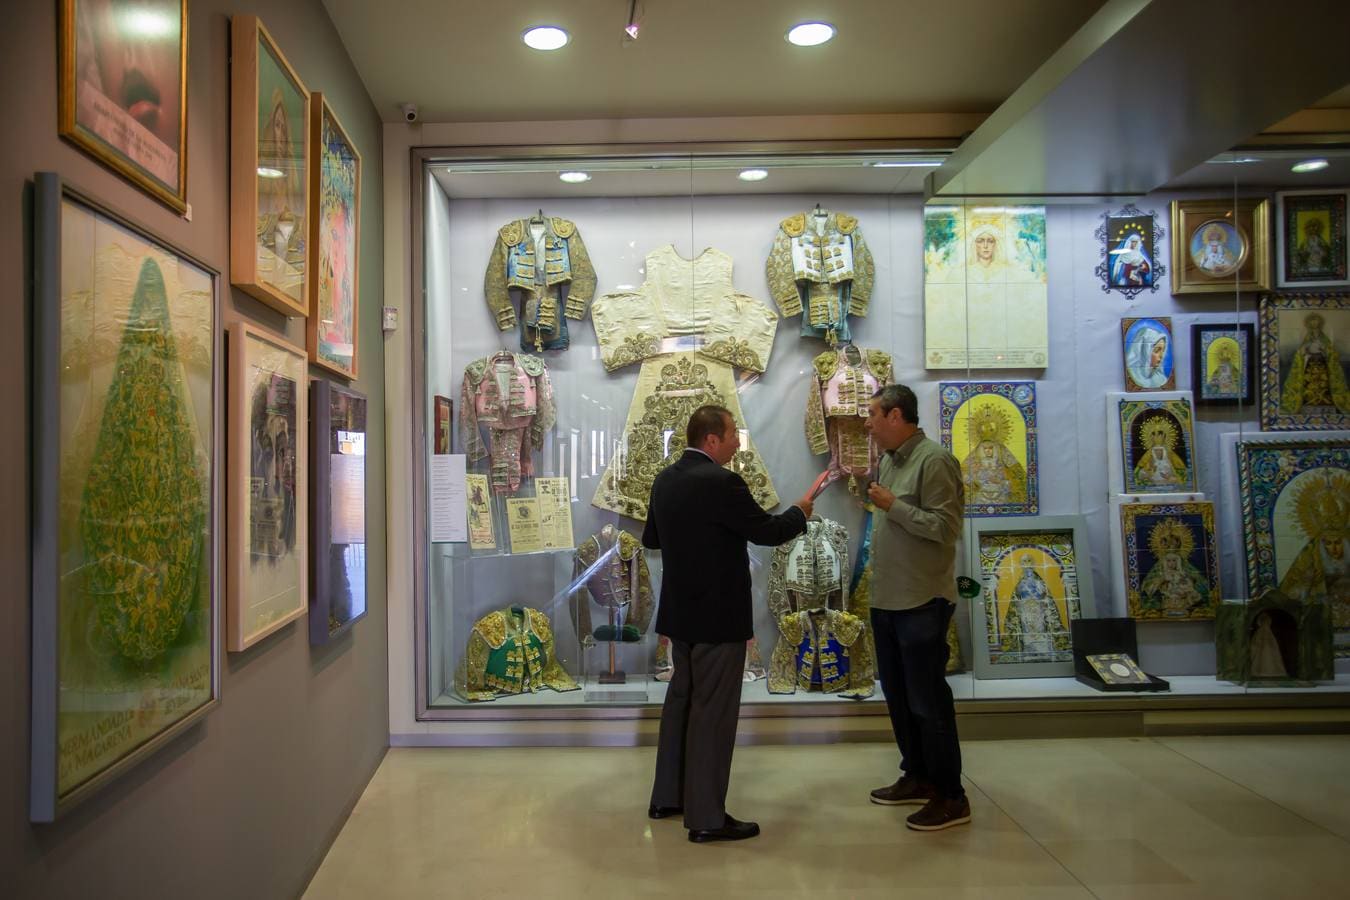 En imágenes, el reformado Museo de la Macarena